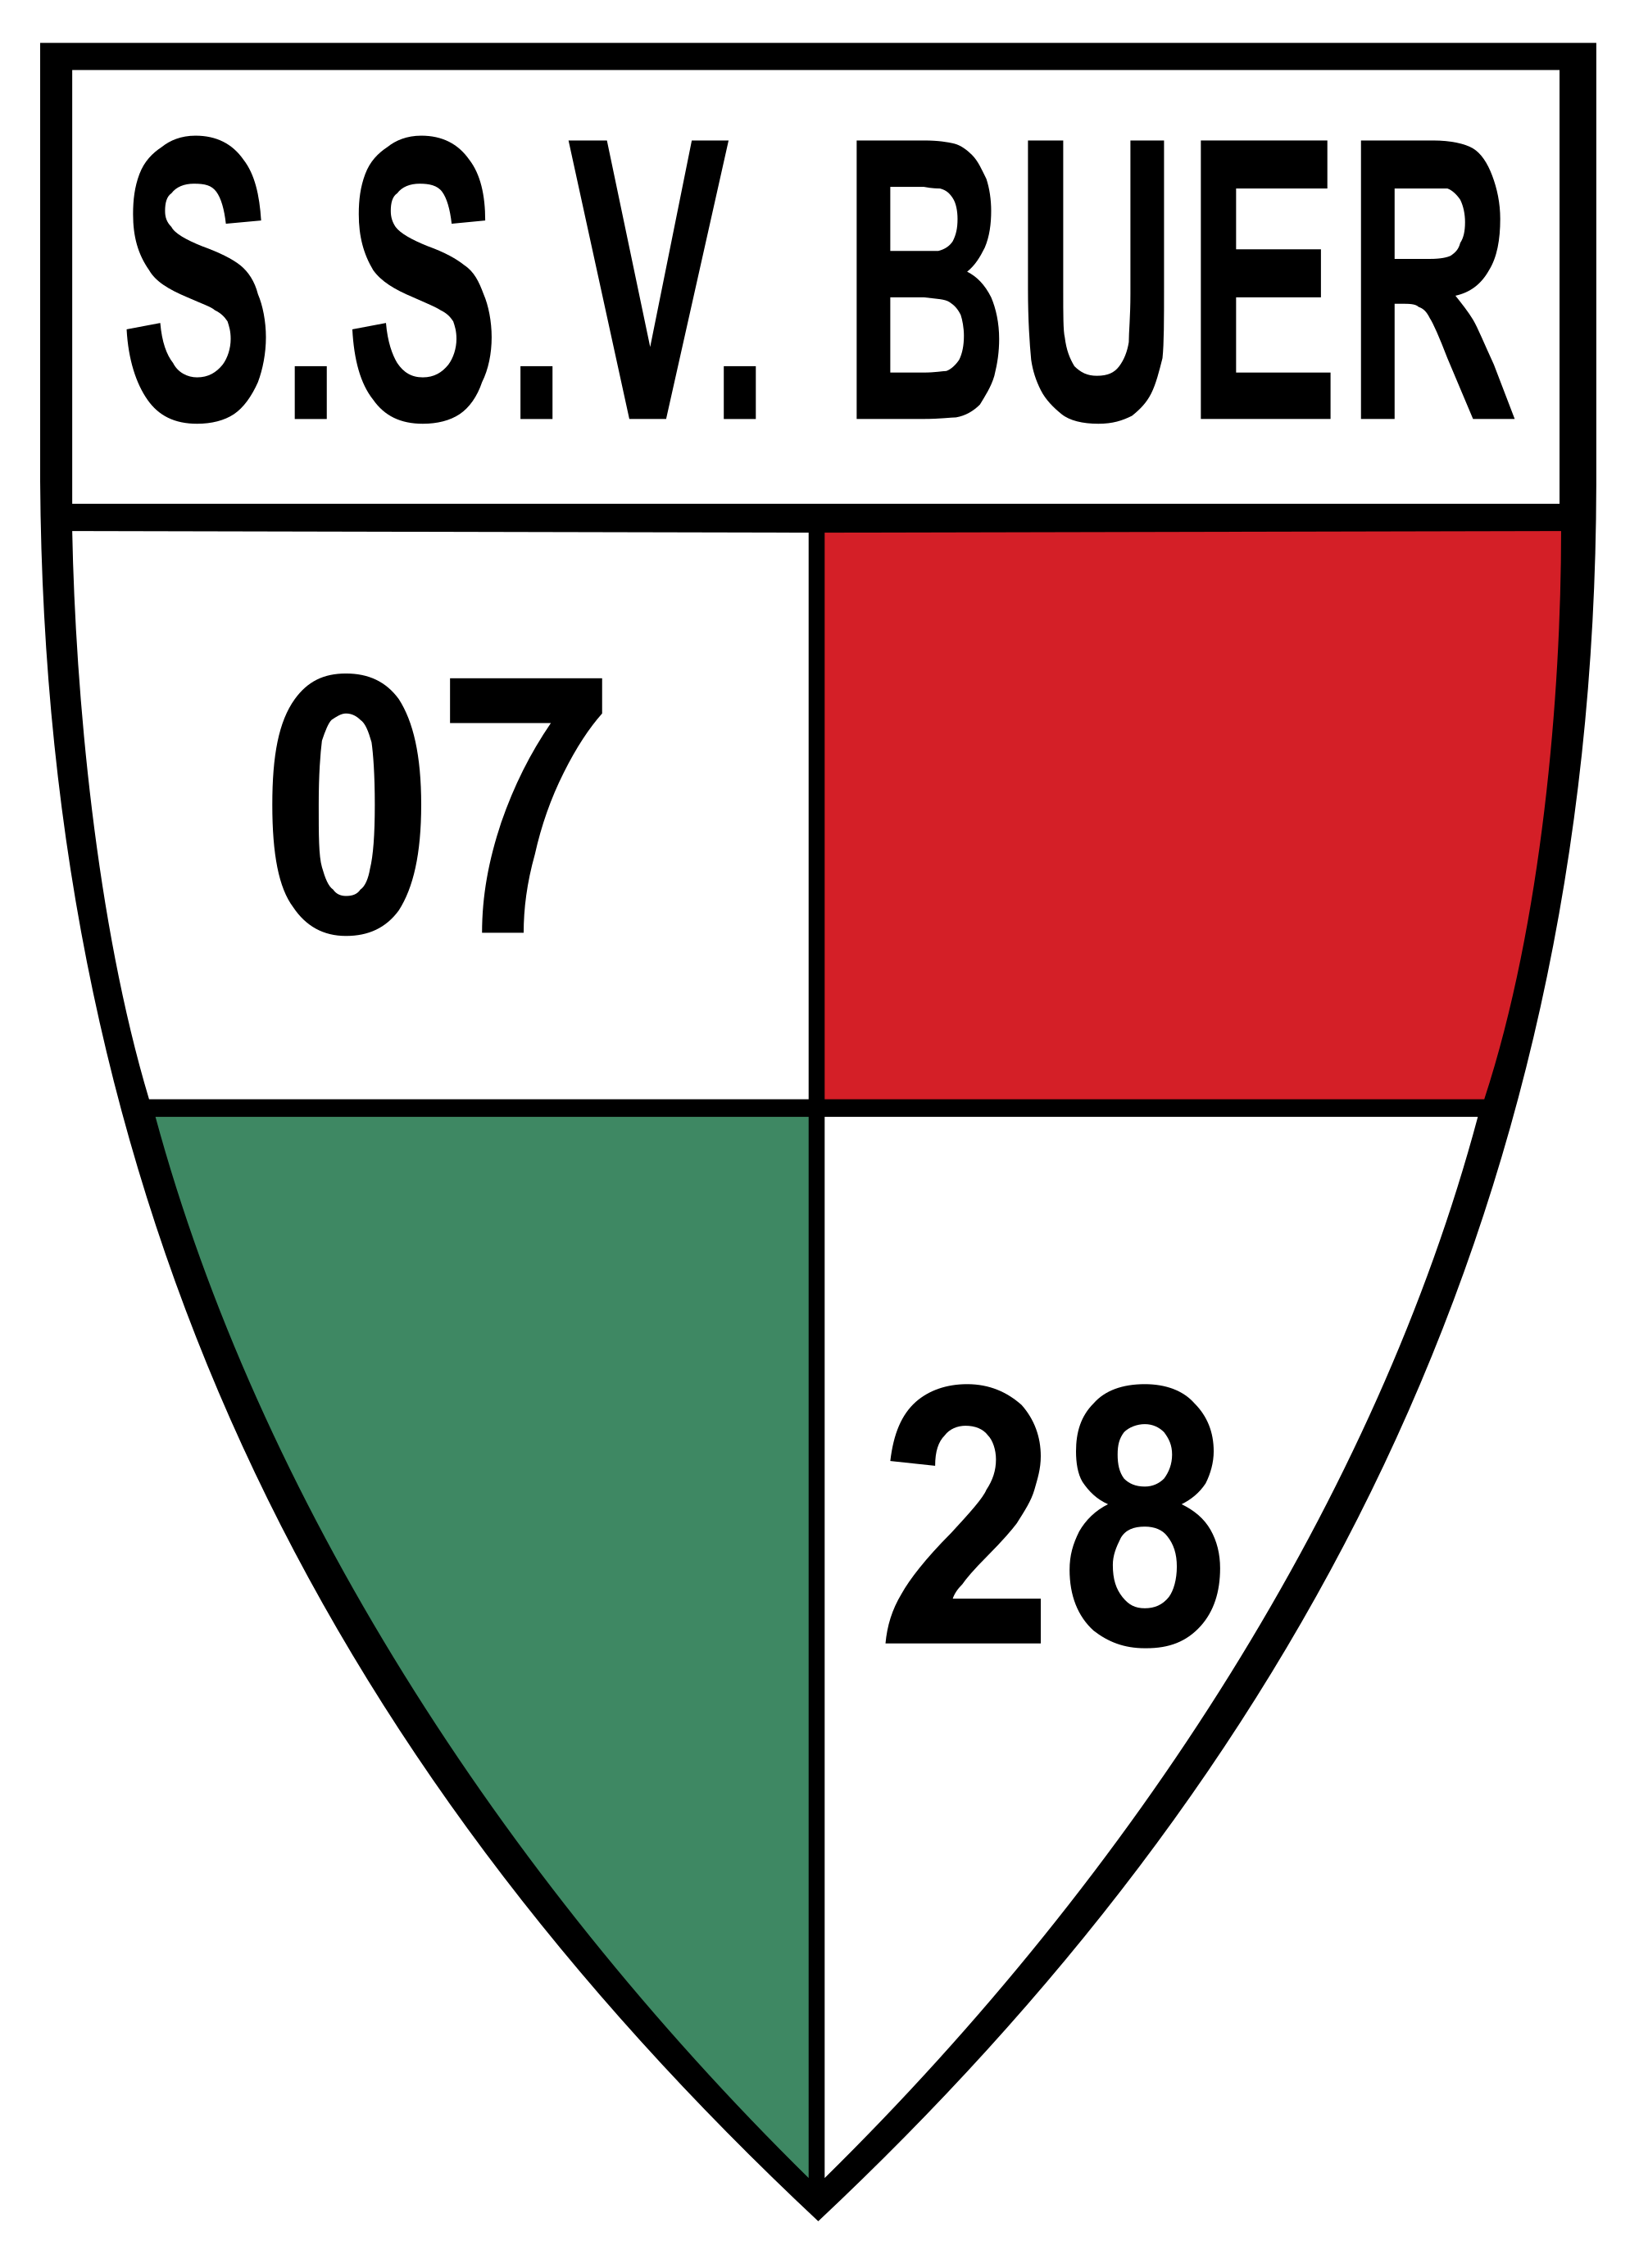 Wappen SSV Buer 07/28  122212